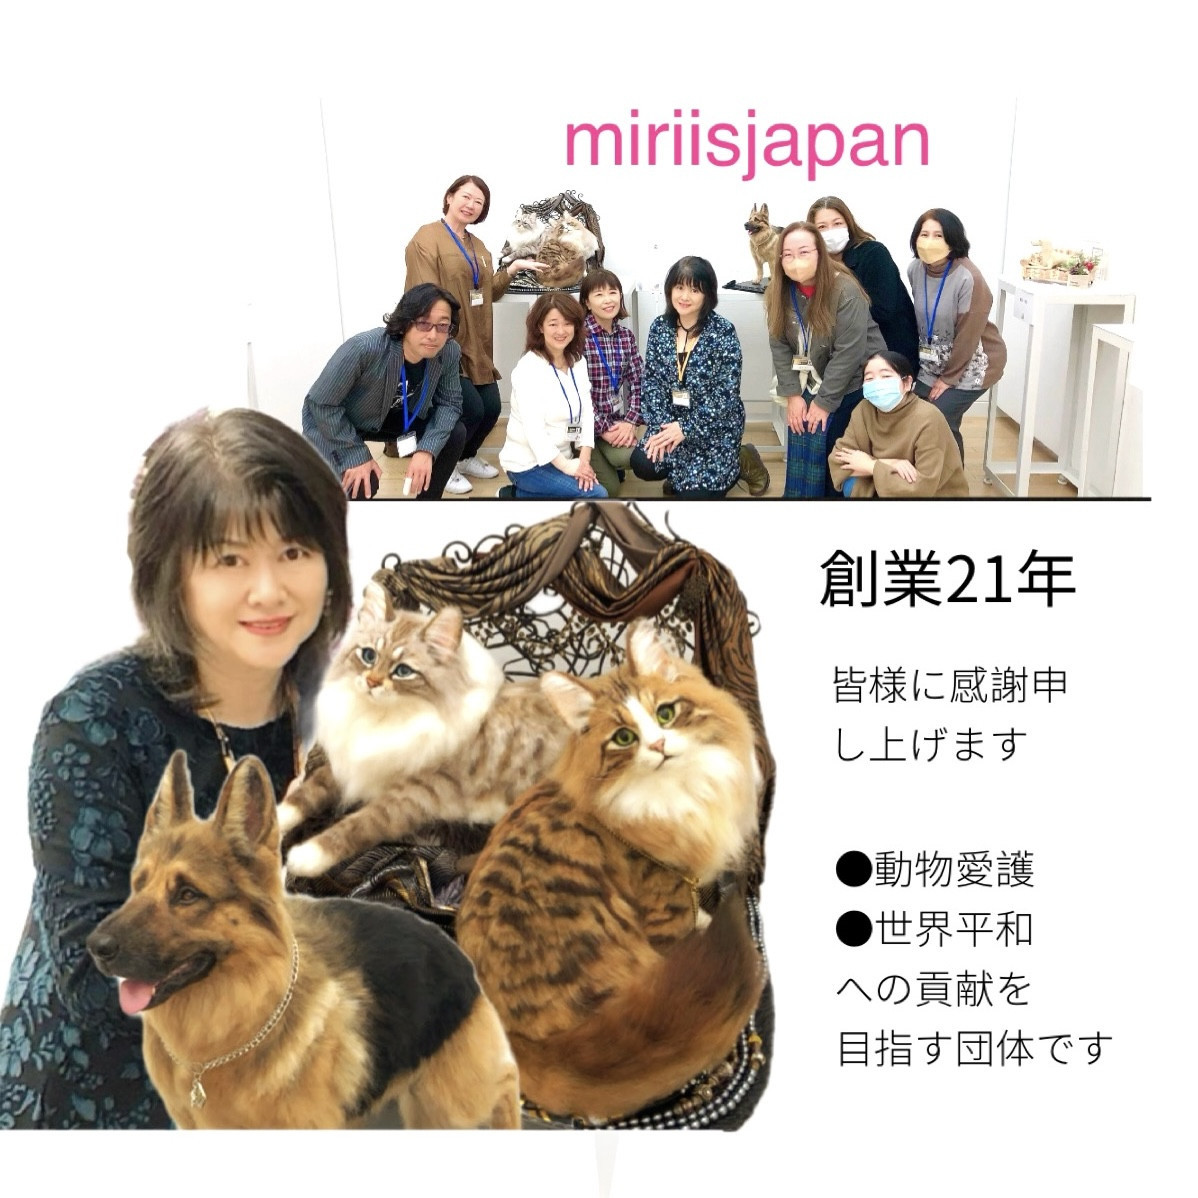 羊毛フェルト 教室 きりのみりい 一般社団法人mirii is japan羊毛 